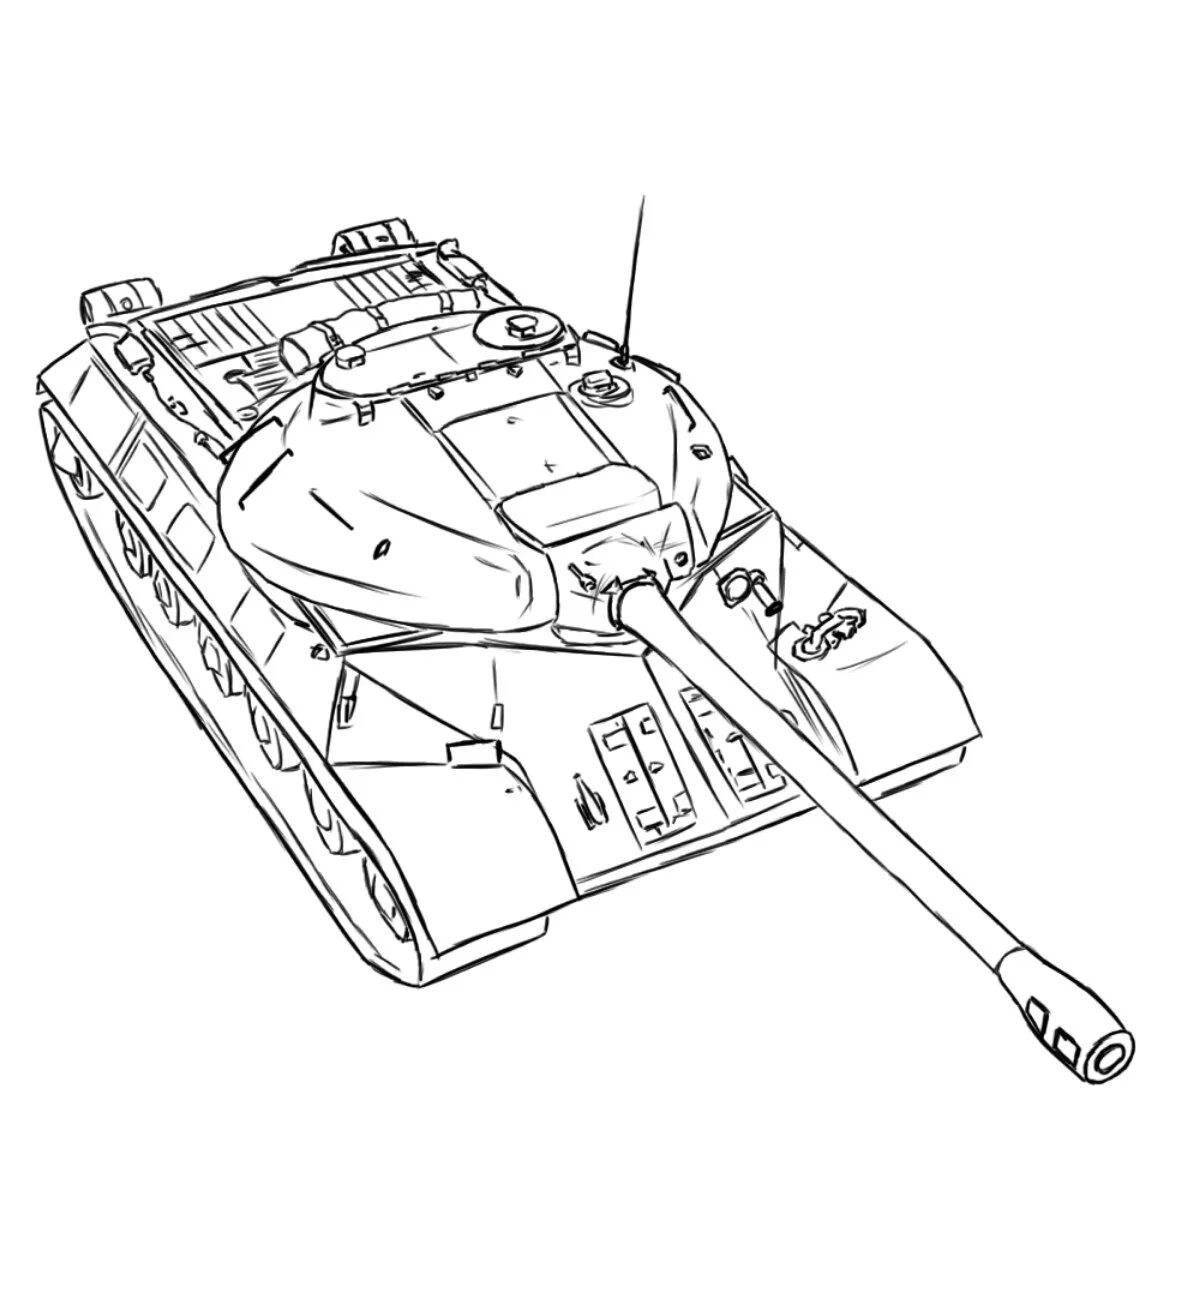 Раскраска 3 танка. Нарисовать танк ИС 7. Танк ИС 3 раскраска. ИС-7 World of Tanks раскраска. Раскраска танка ИС 2.